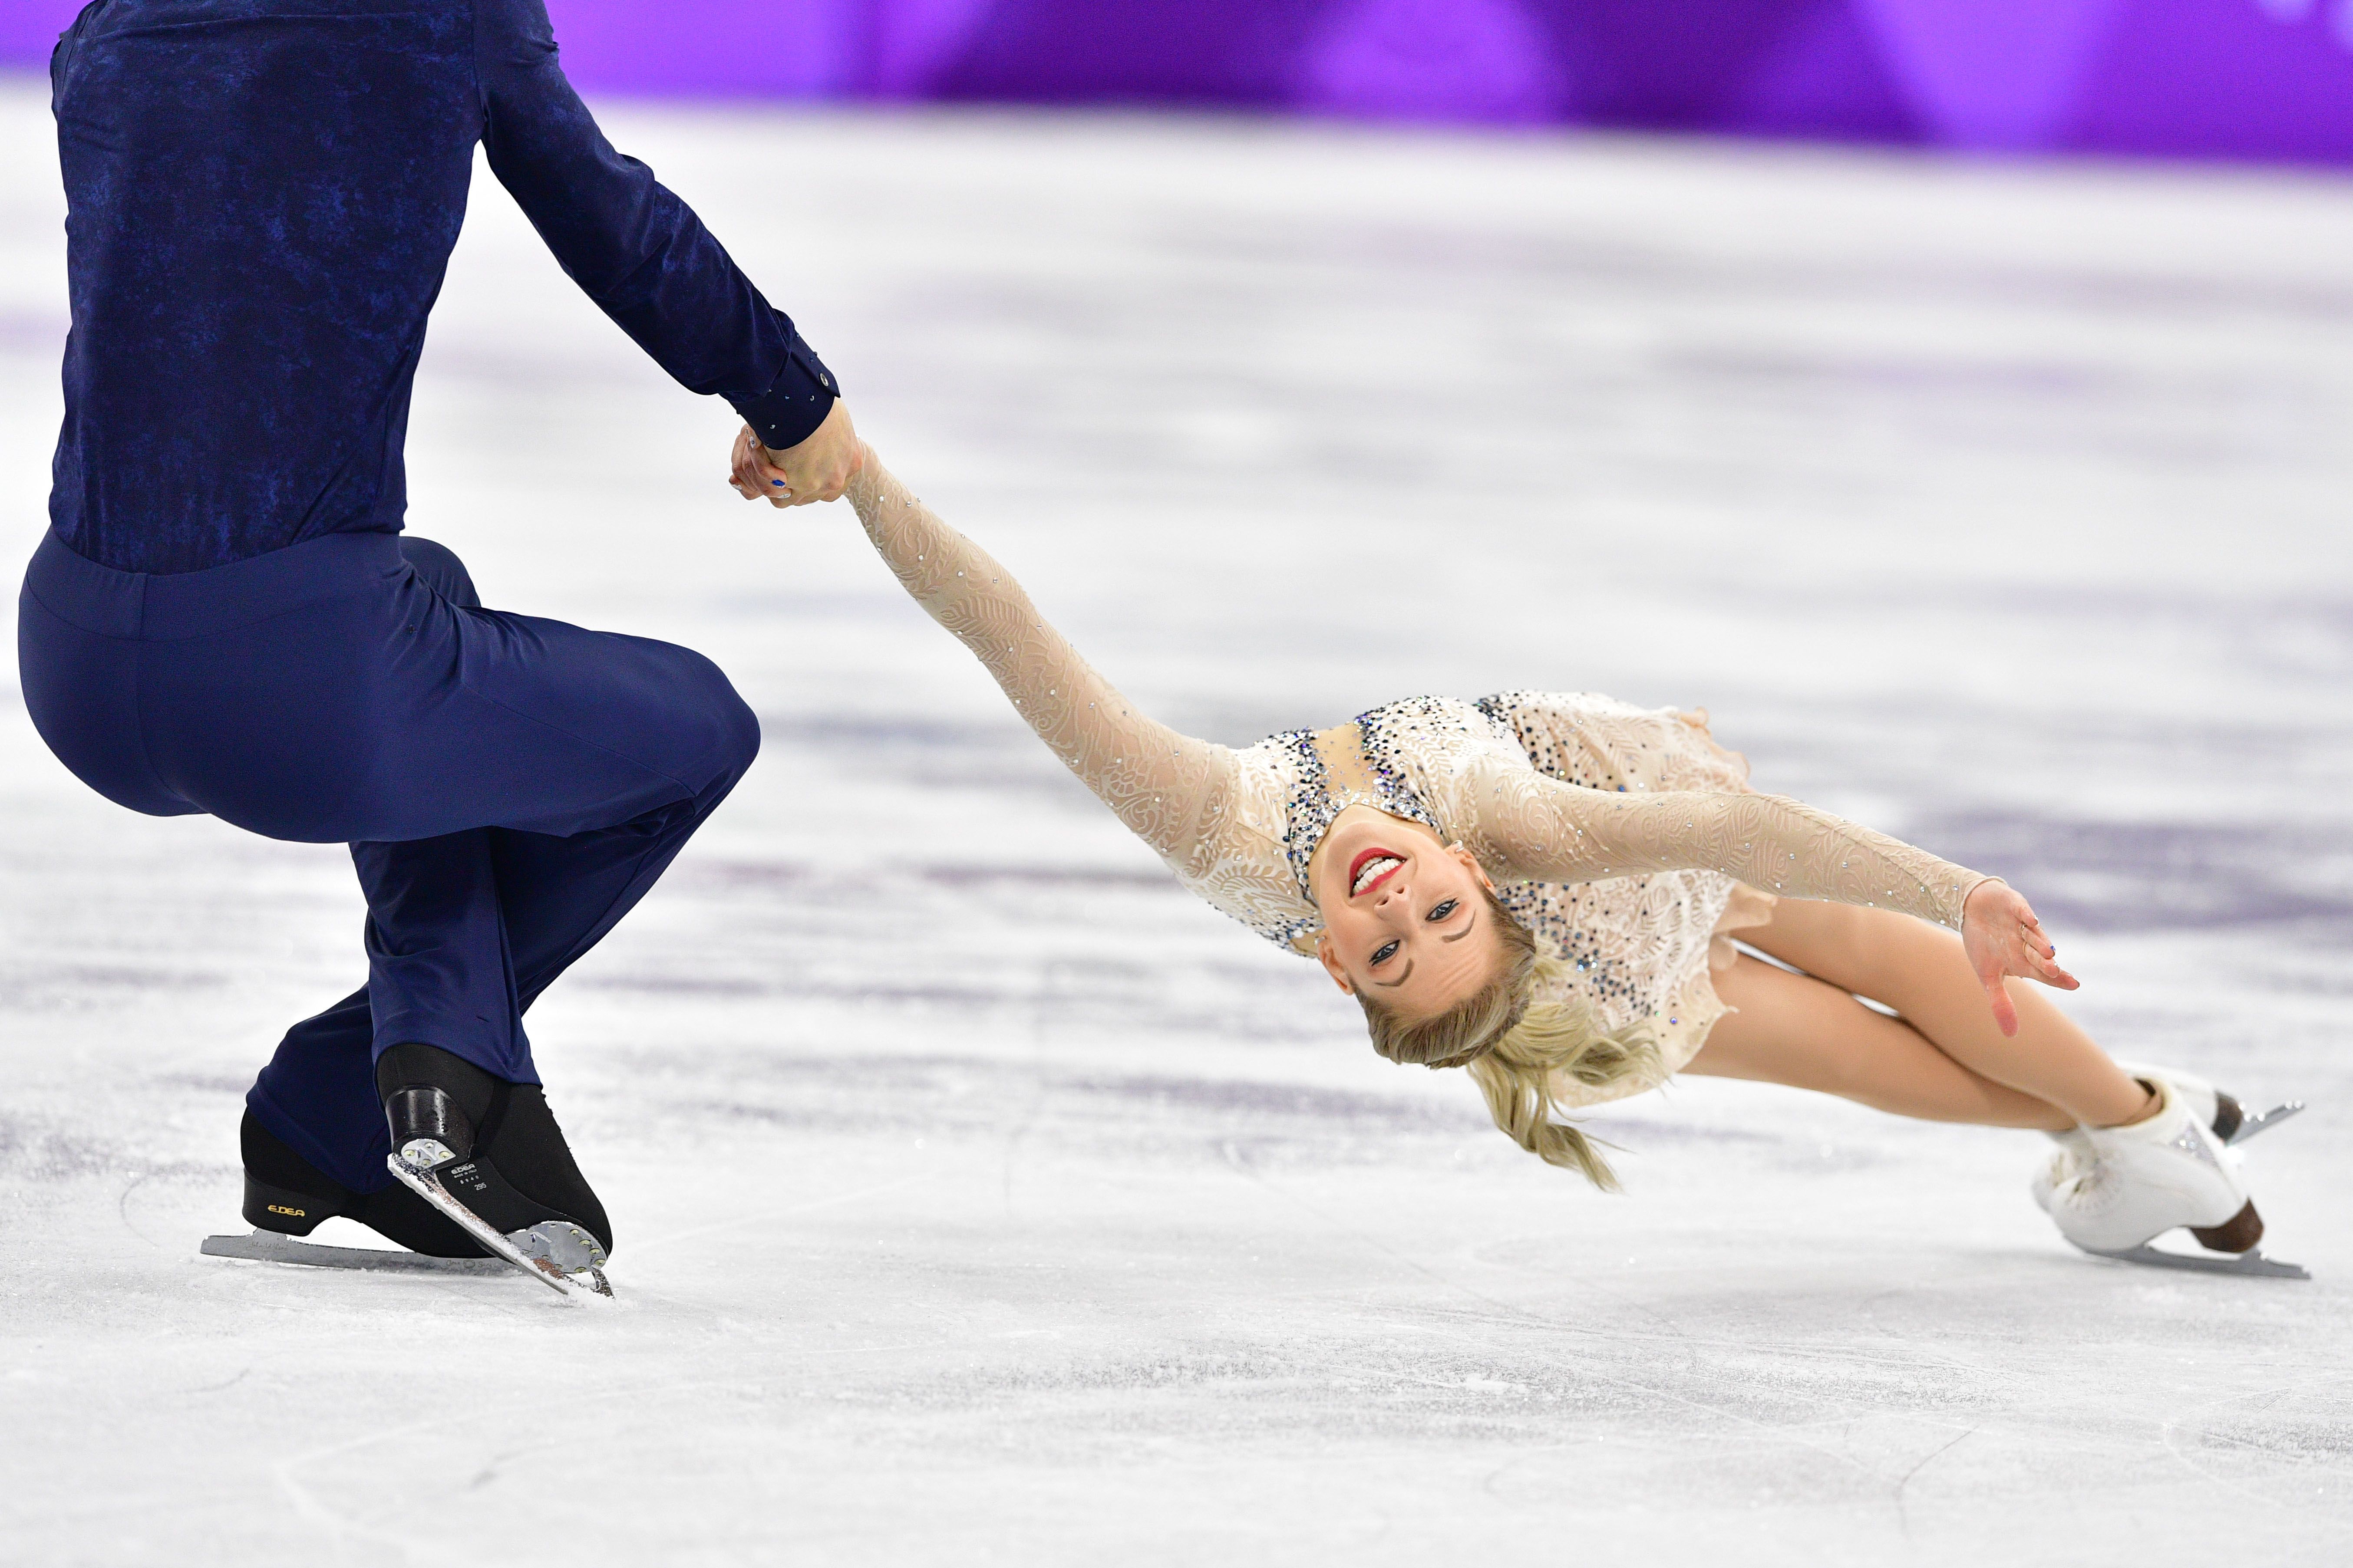 Figure Skating Team Photos 2018 Olympics — Skating Pics PyeongChang